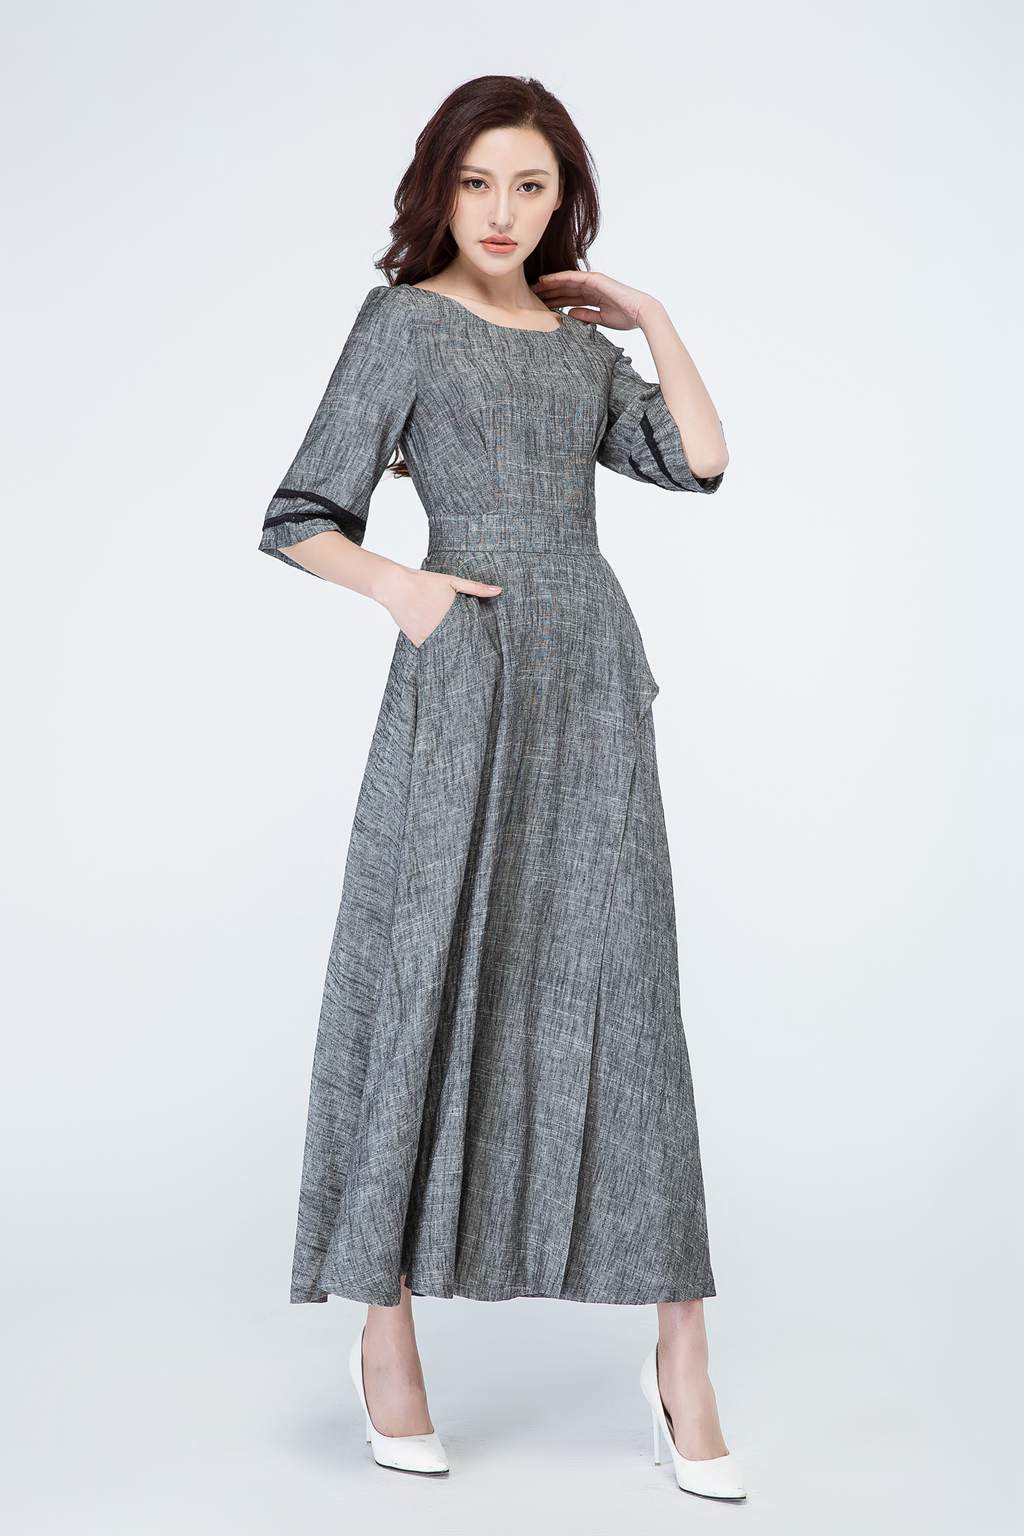 Grey dress, linen dress, maxi dress 1698 – XiaoLizi